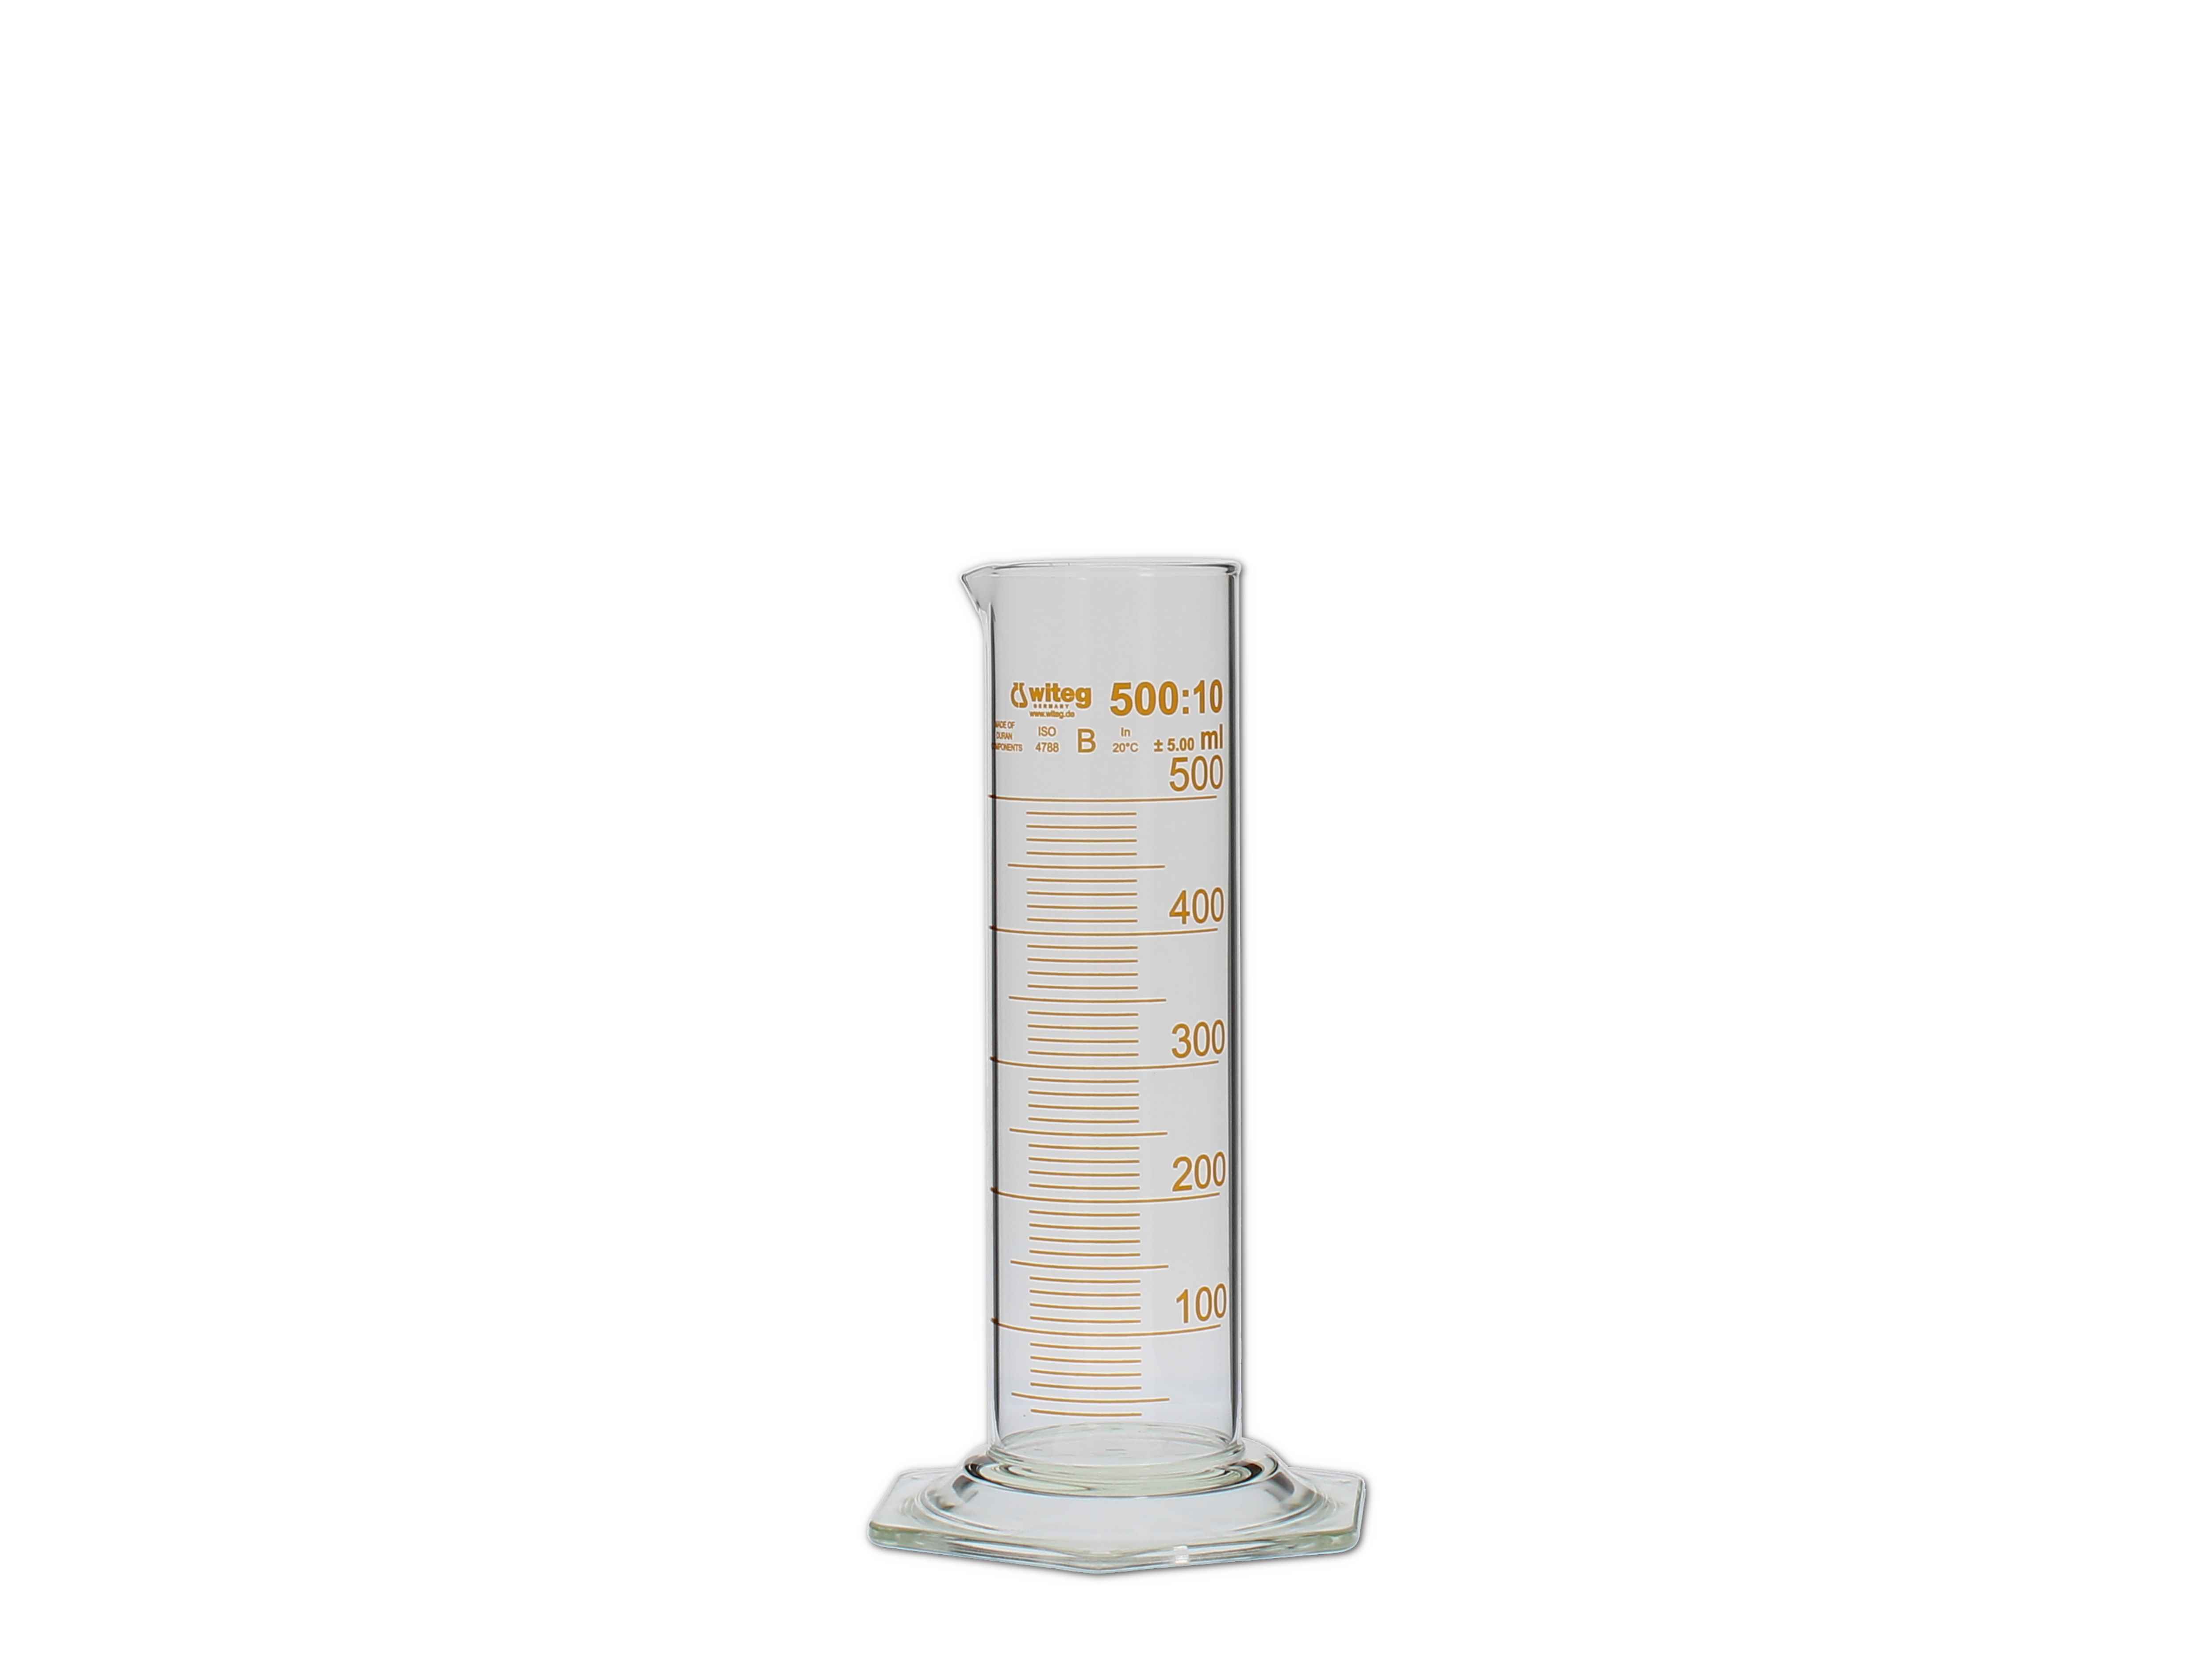    Messzylinder, Glas, graduiert - 500ml (niedere Form)